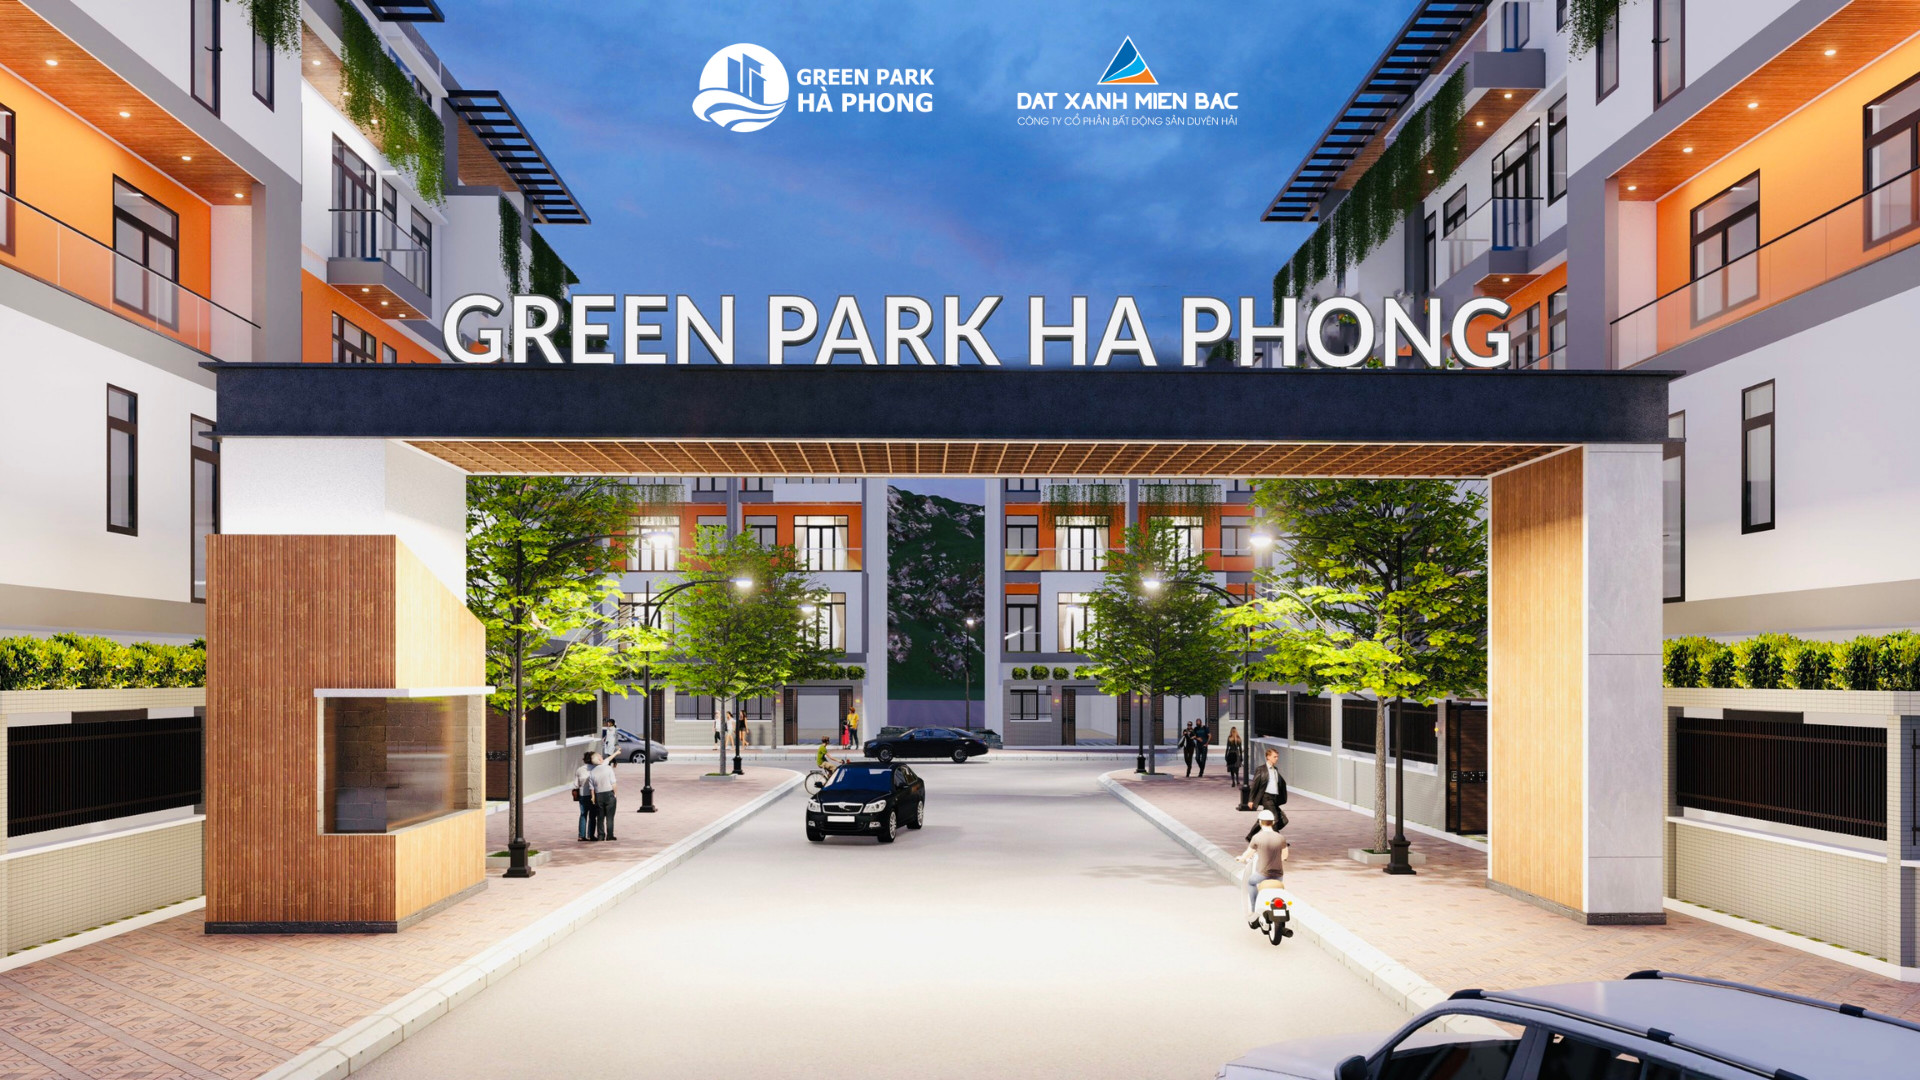 Green Park Hà Phong